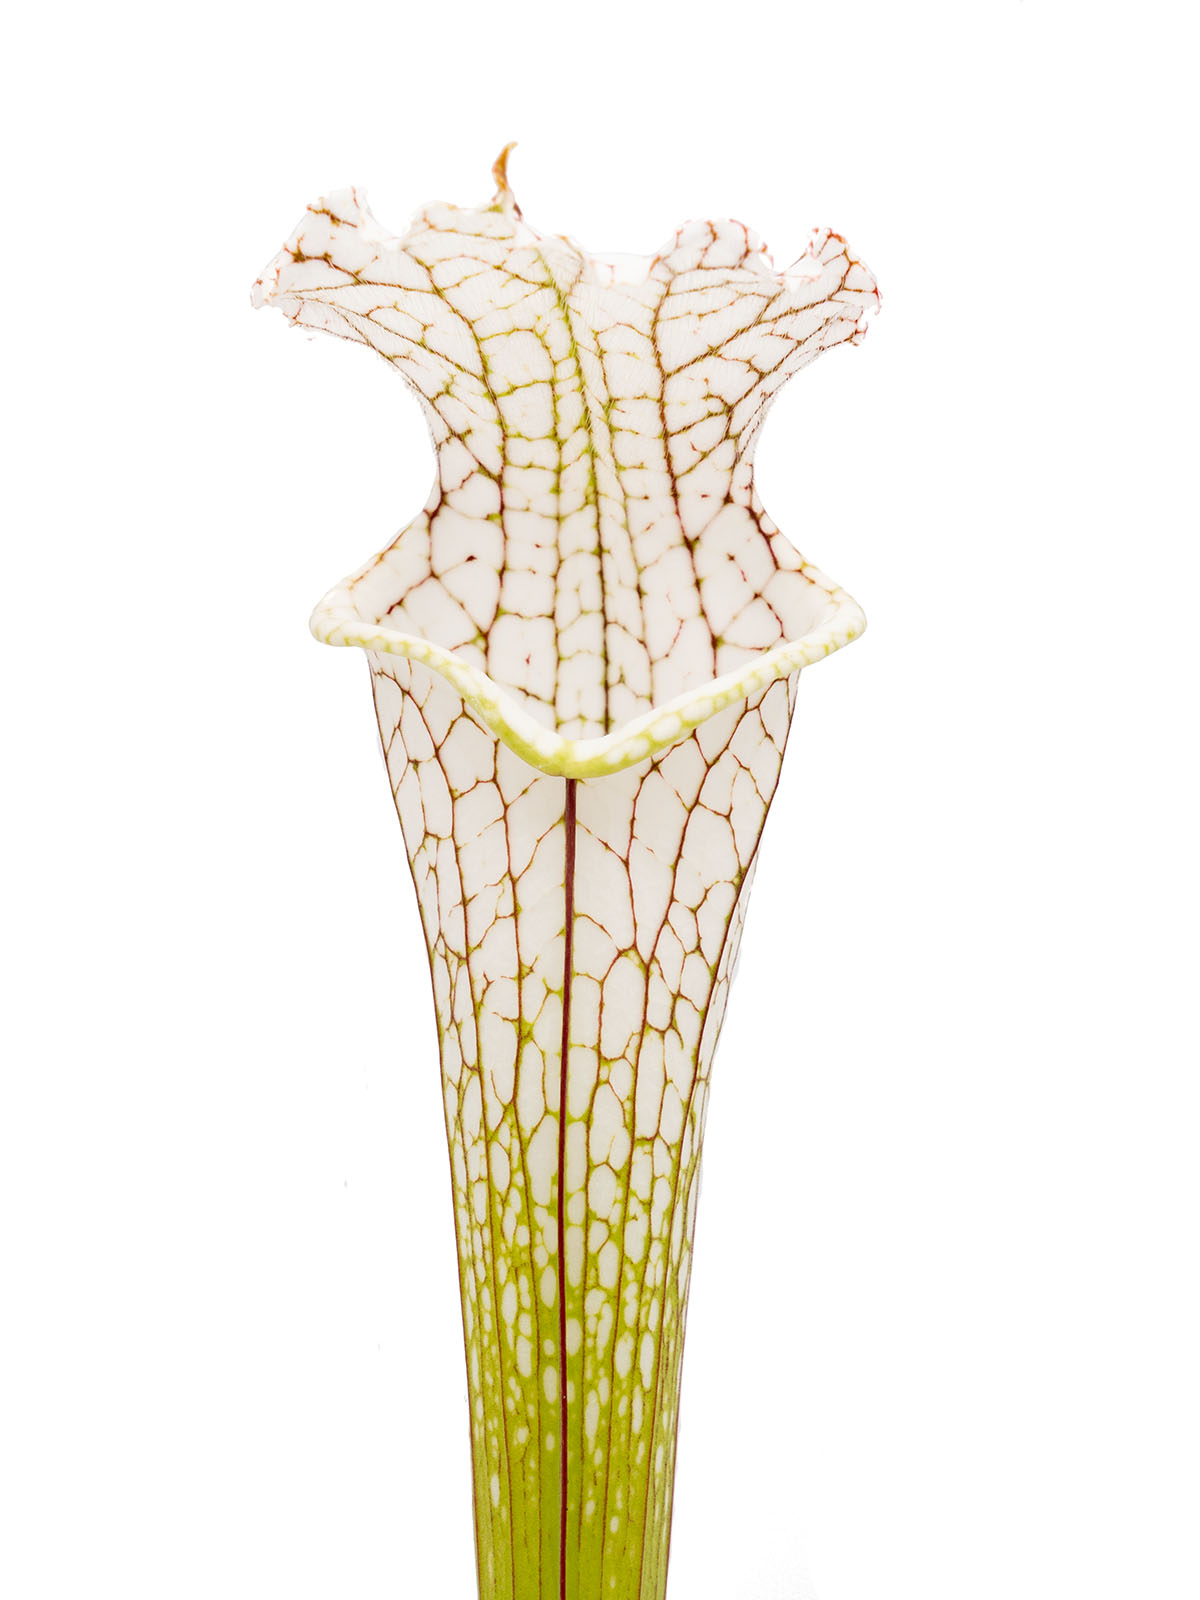 Sarracenia leucophylla - seedling with KP10-2007